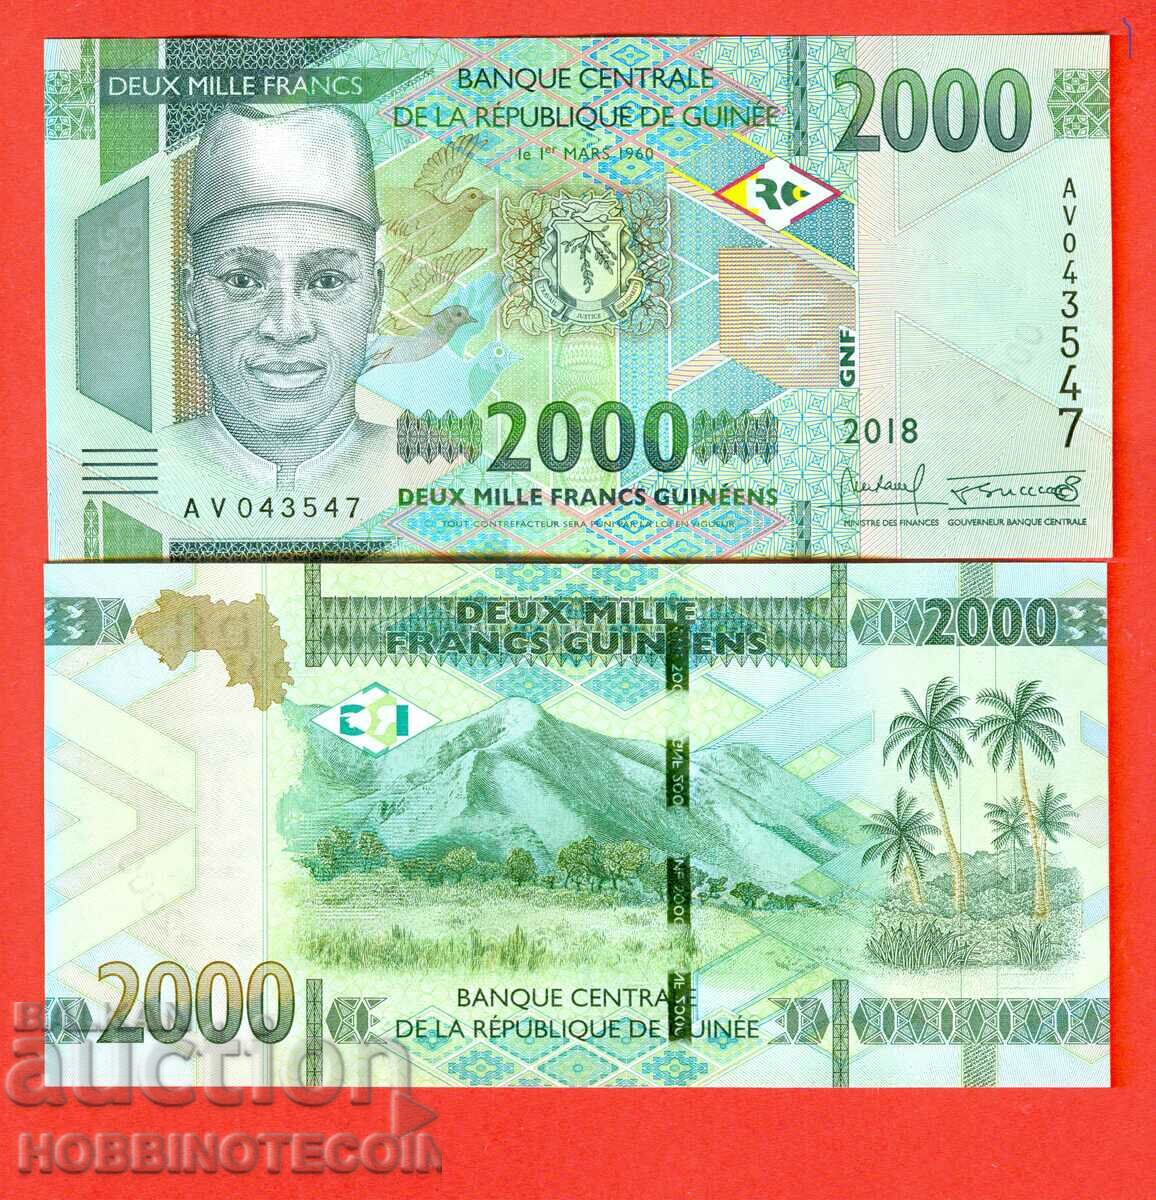 GUINEA GUINEA 2000 2000 Franc emisiunea 2018 NOU UNC